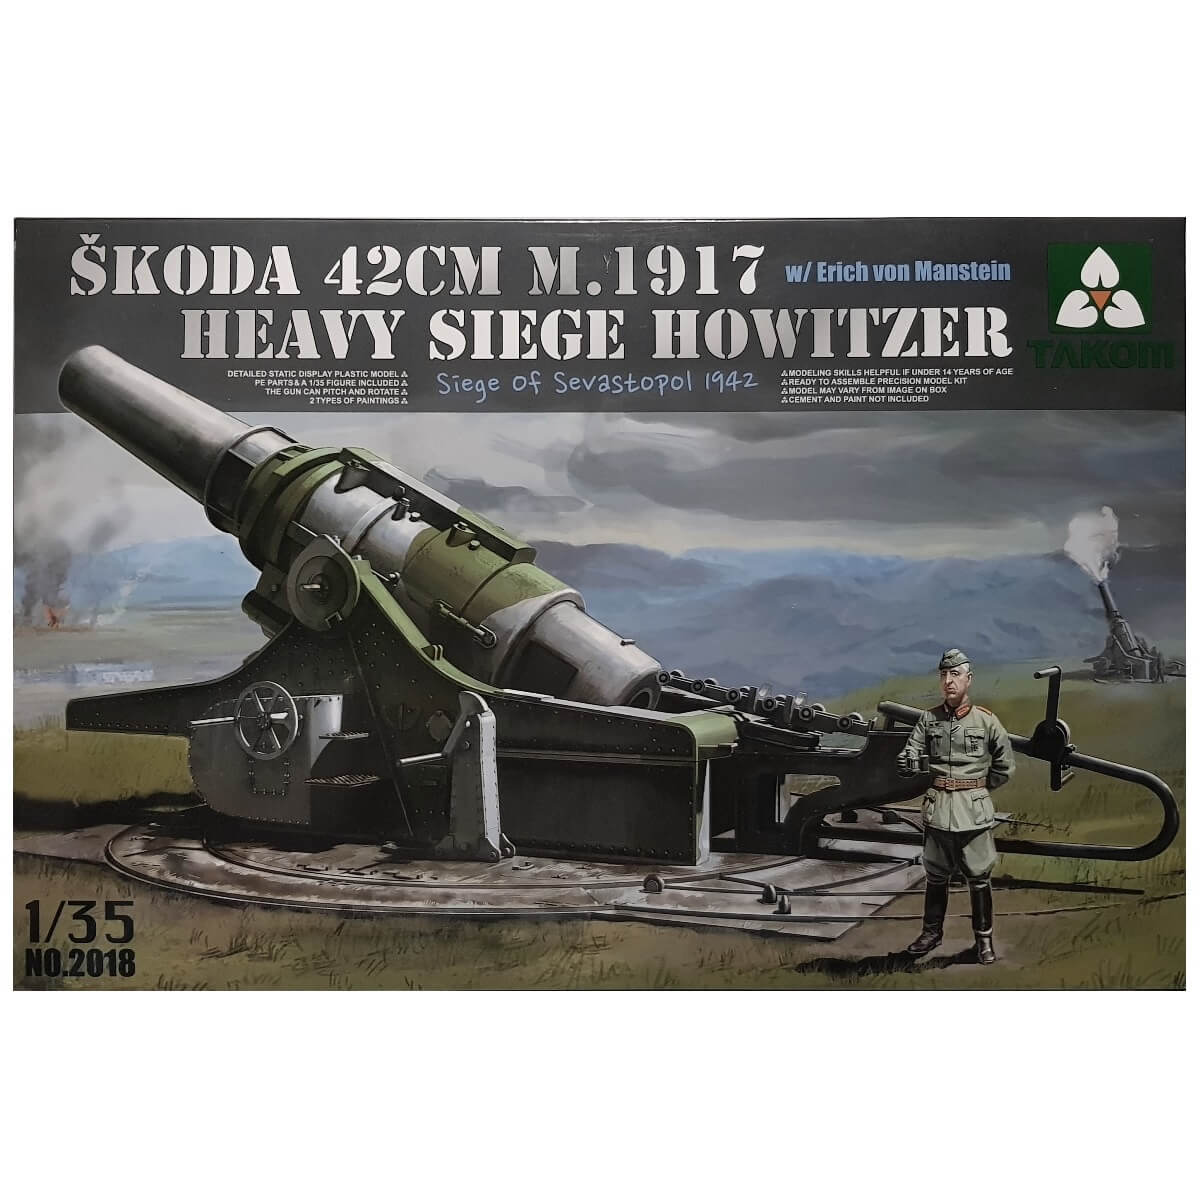 1:35 Skoda 42cm M1917 Heavy Siege Howitzer - Sevastopol 1942 with Erich von Manstein - TAKOM